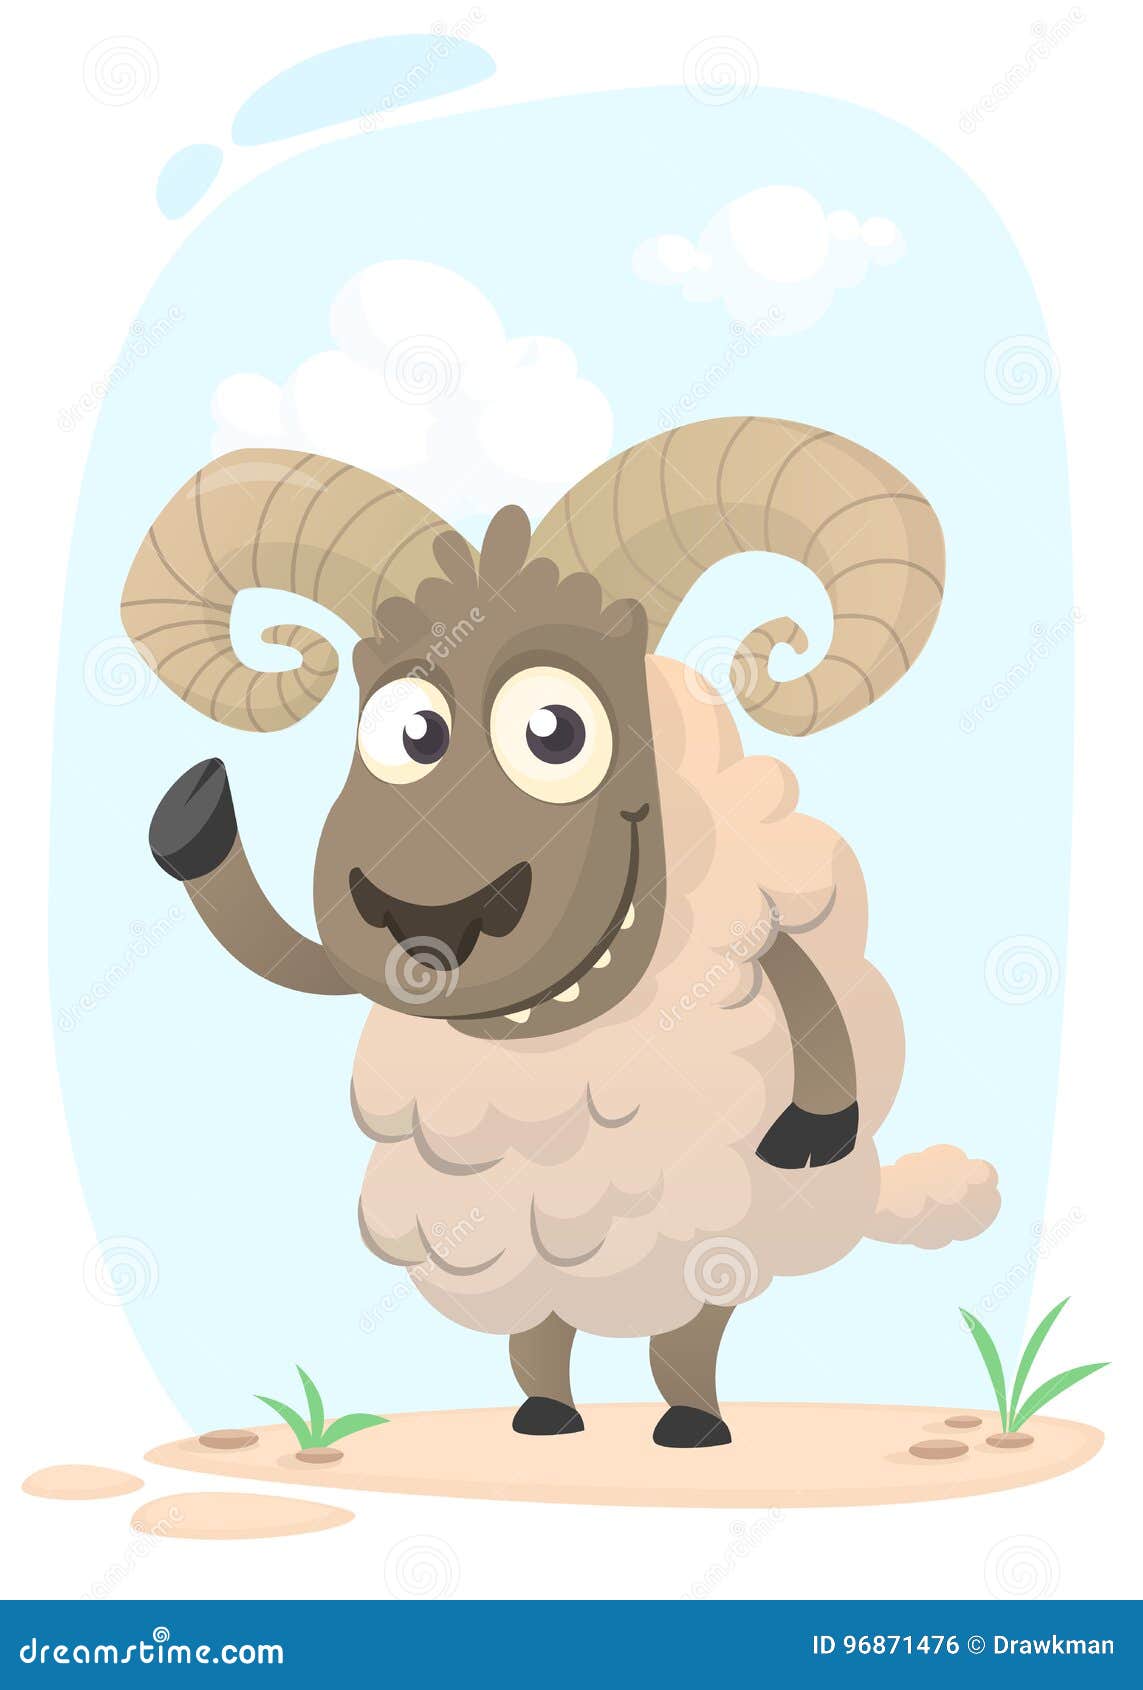 Funny Cartoon Sheep. Vector Illustration Stock Vector - Illustration of